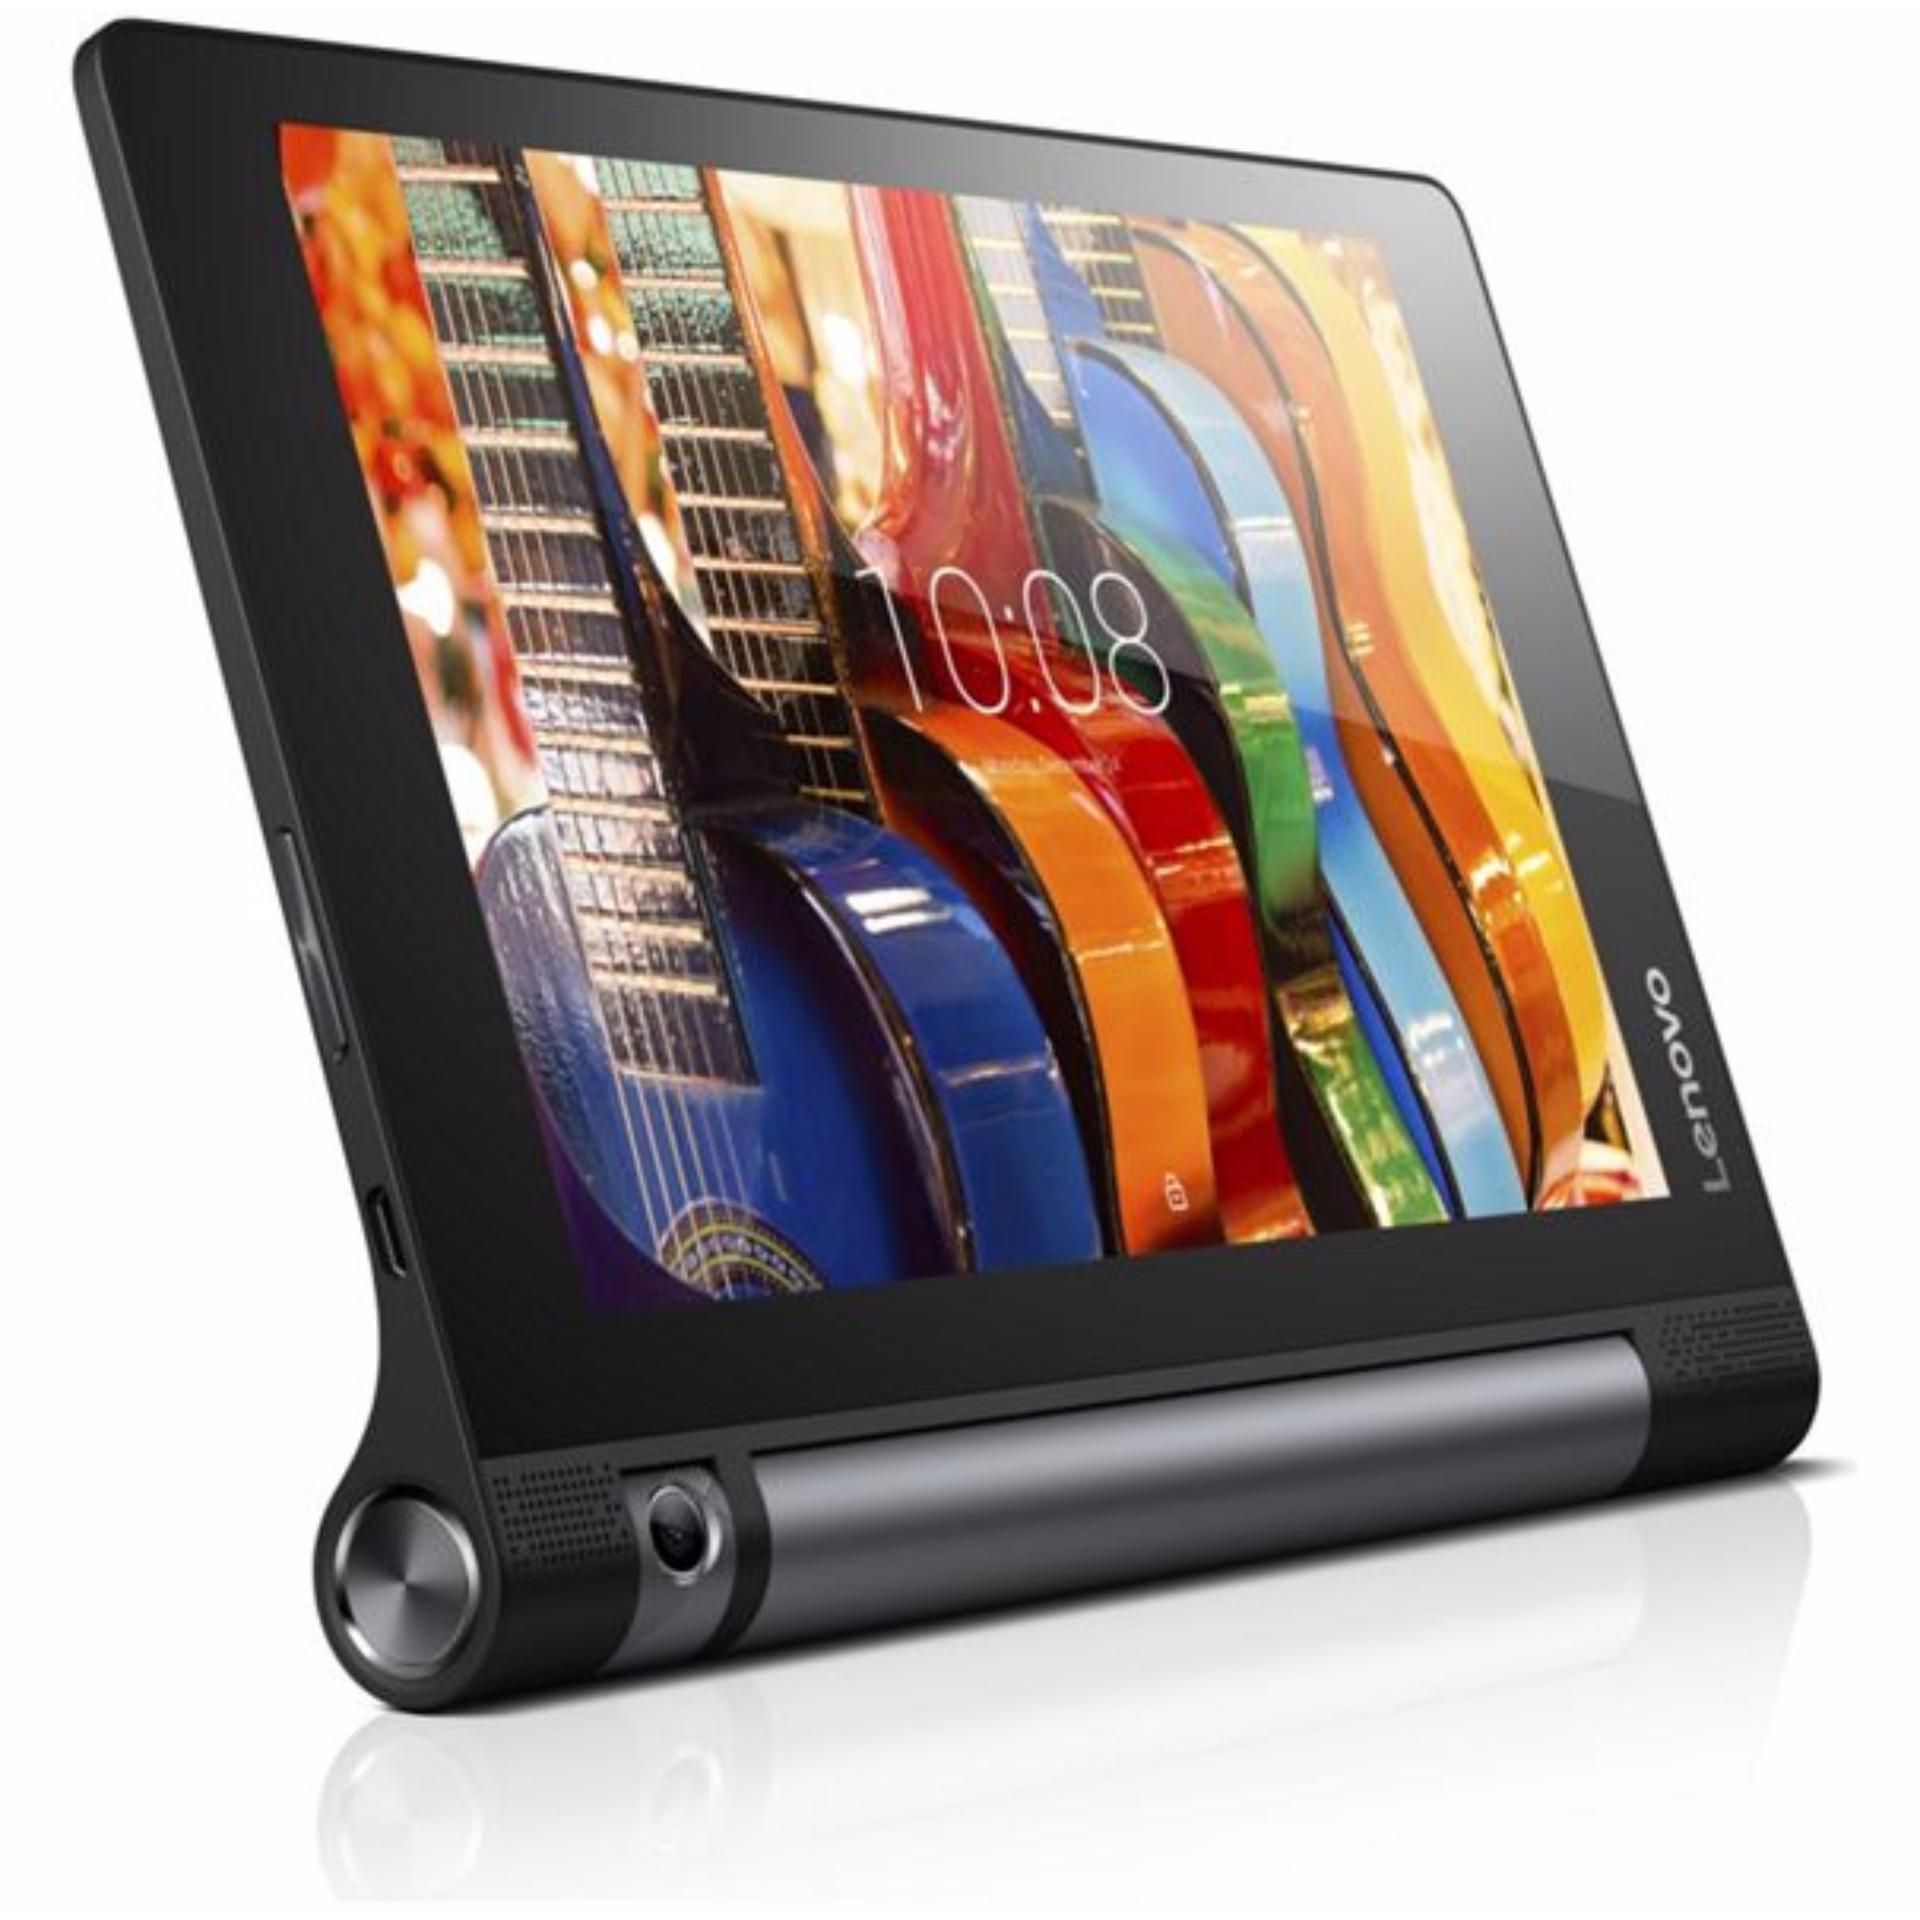 Máy tính bảng Lenovo Yoga 3 8inch YT3-850M 16GB Ram 2GB (Đen) -Hãng nhập khẩu